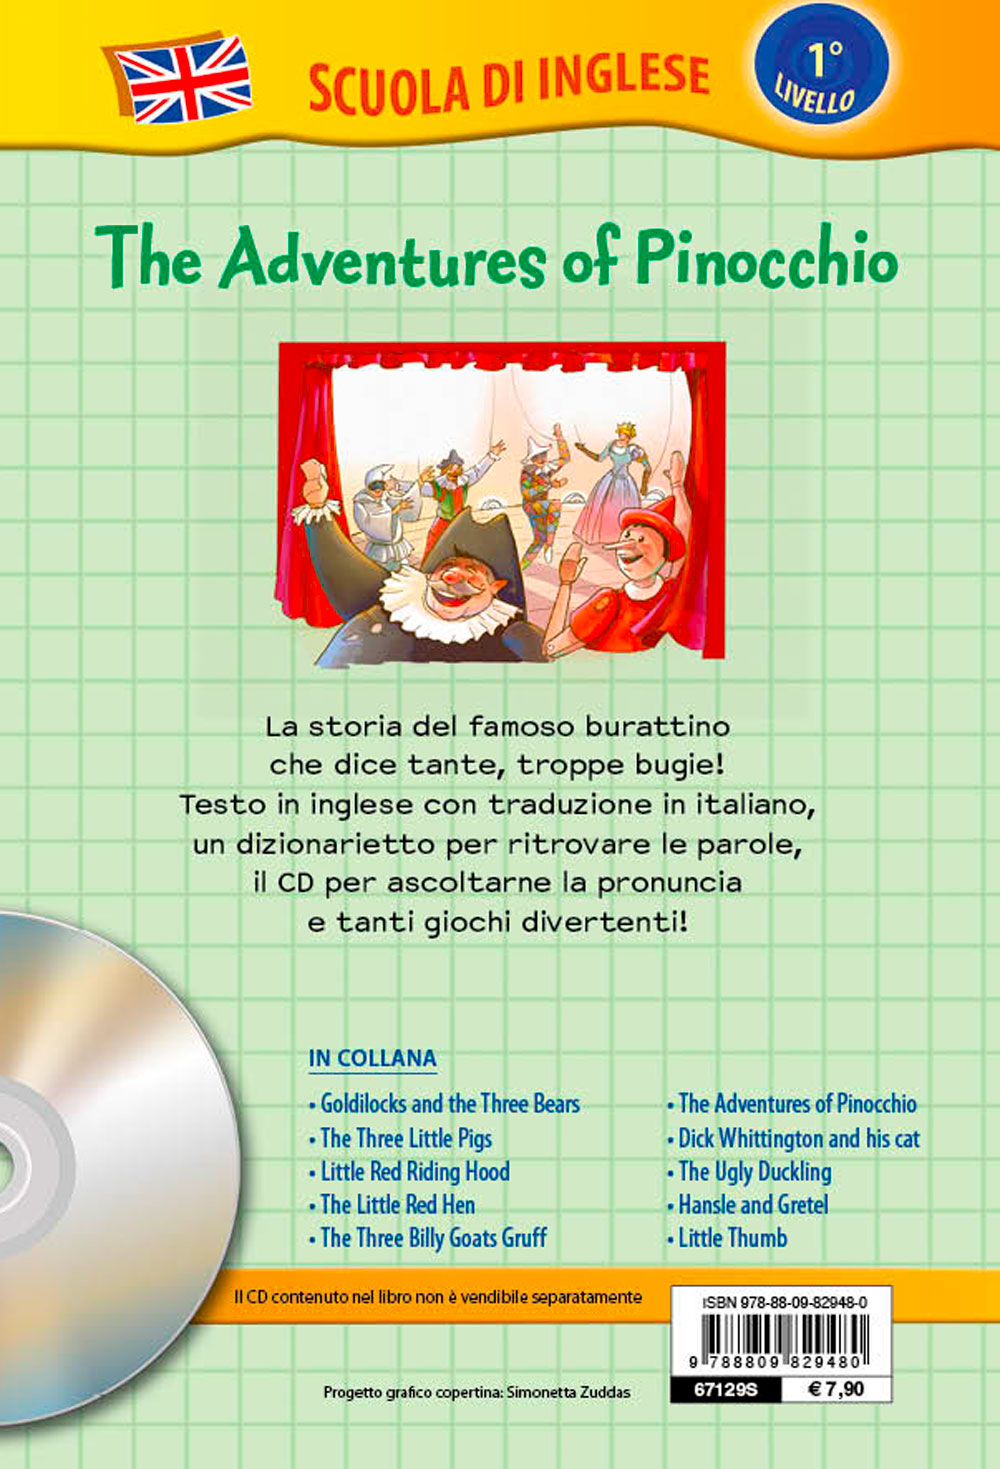 The adventures of Pinocchio + CD::Le avventure di Pinocchio - Con traduzione e dizionario!